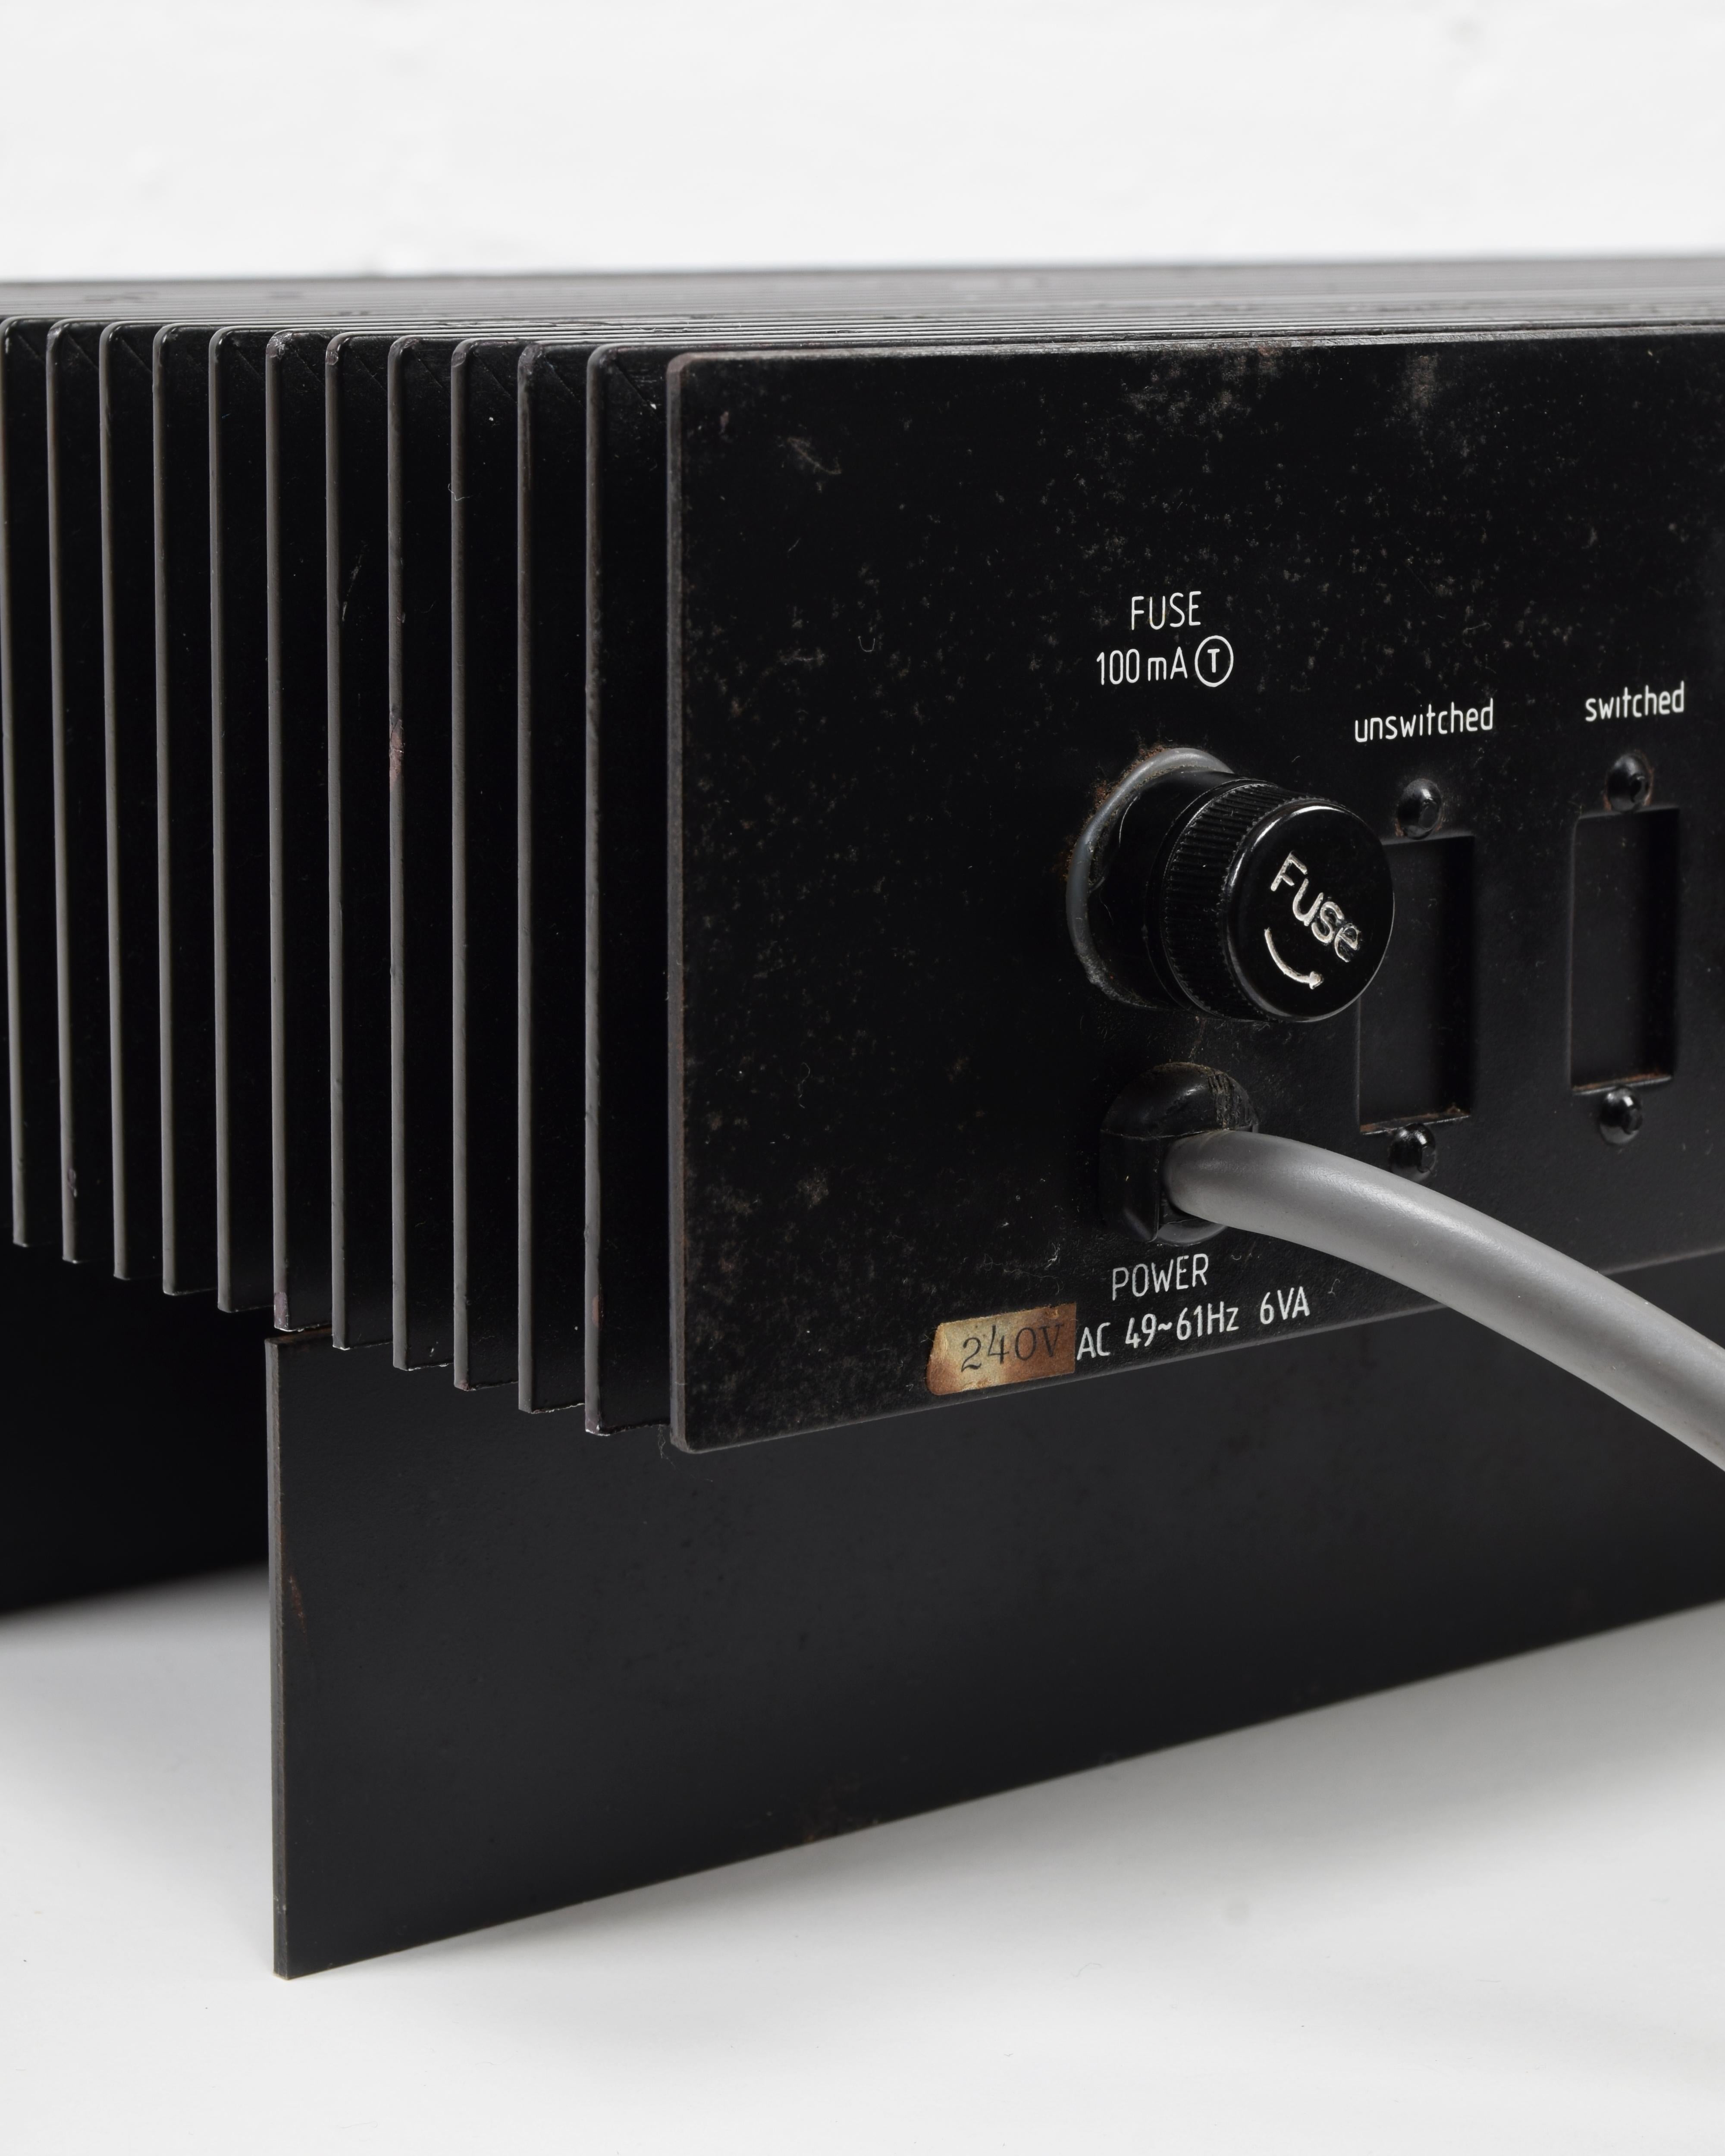 Tangent Acoustics LUPUS PRINCEPS Pre-amplifier, designed by Iain Sinclair, 1979 10